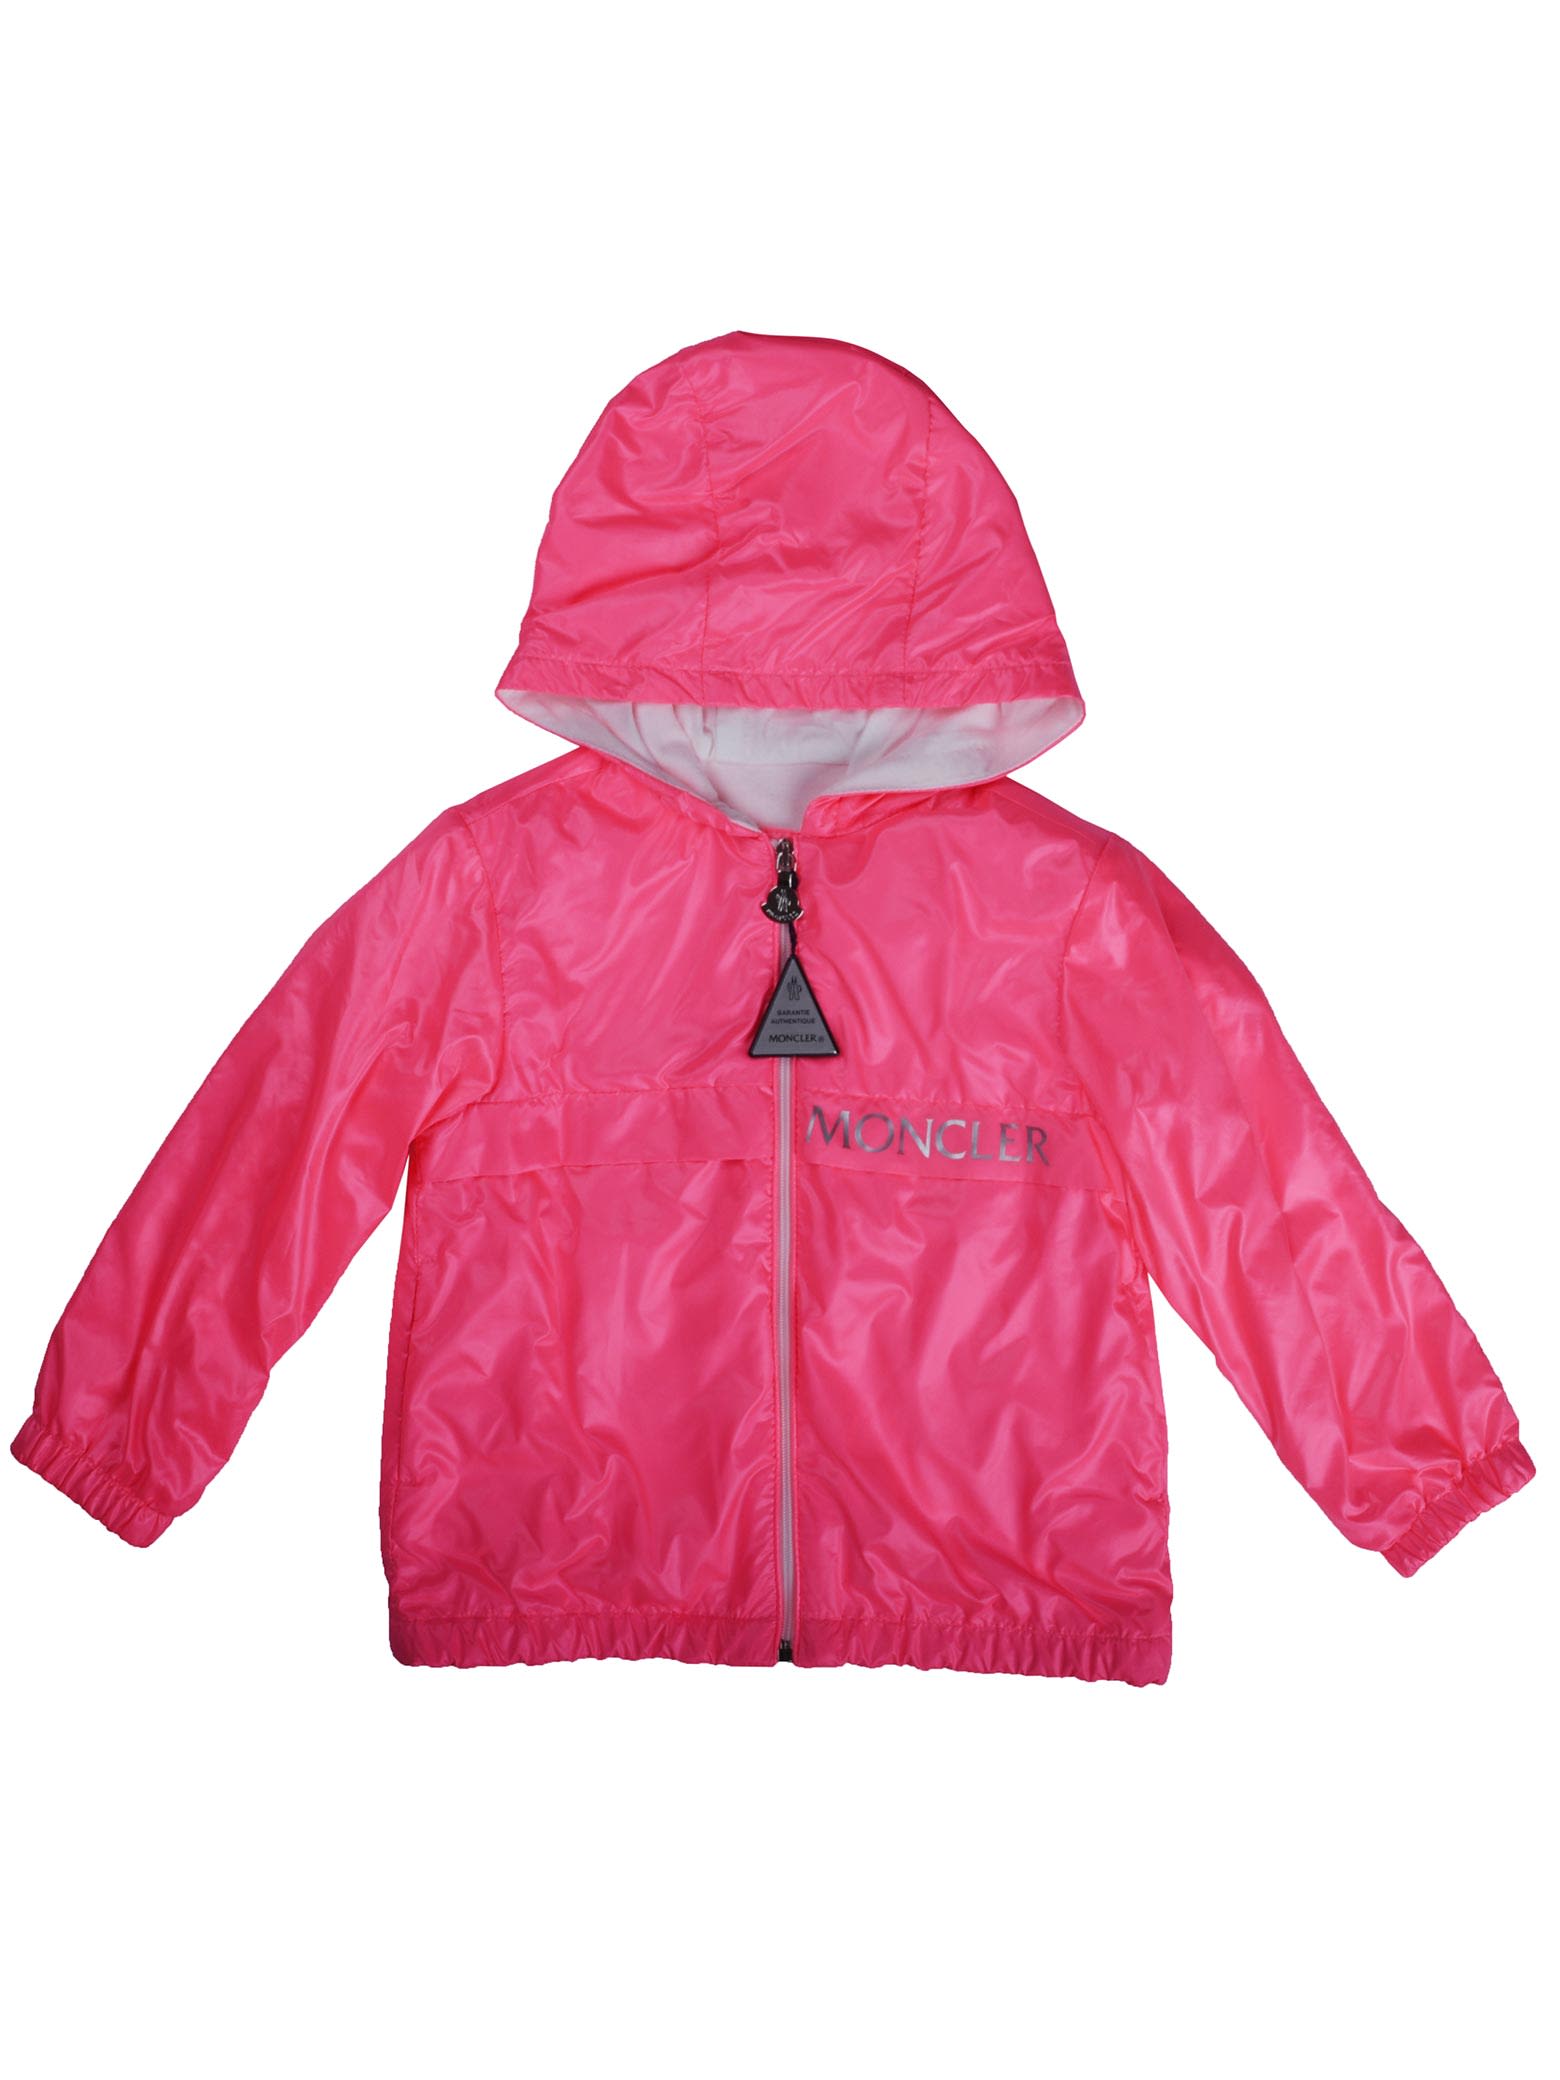 Moncler Admeta Fluo Pink Jacket